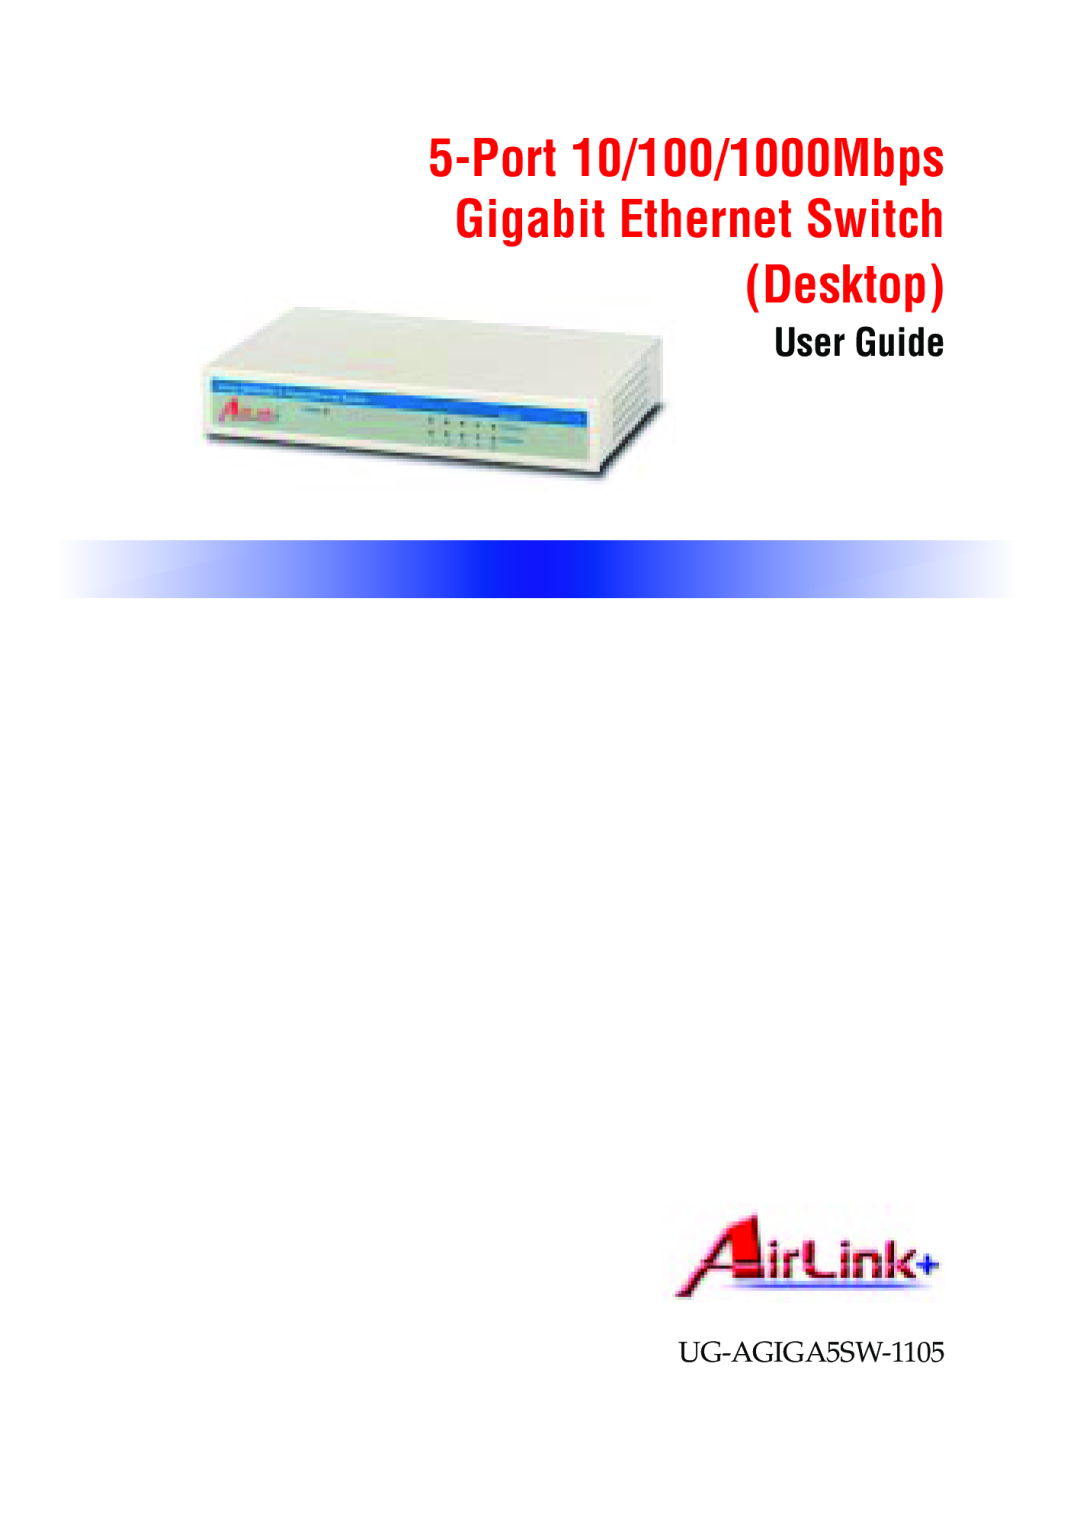 Airlink UG-AGIGA5SW-1105 manual Port 10/100/1000Mbps Gigabit Ethernet Switch Desktop, User Guide, AirLink+ 